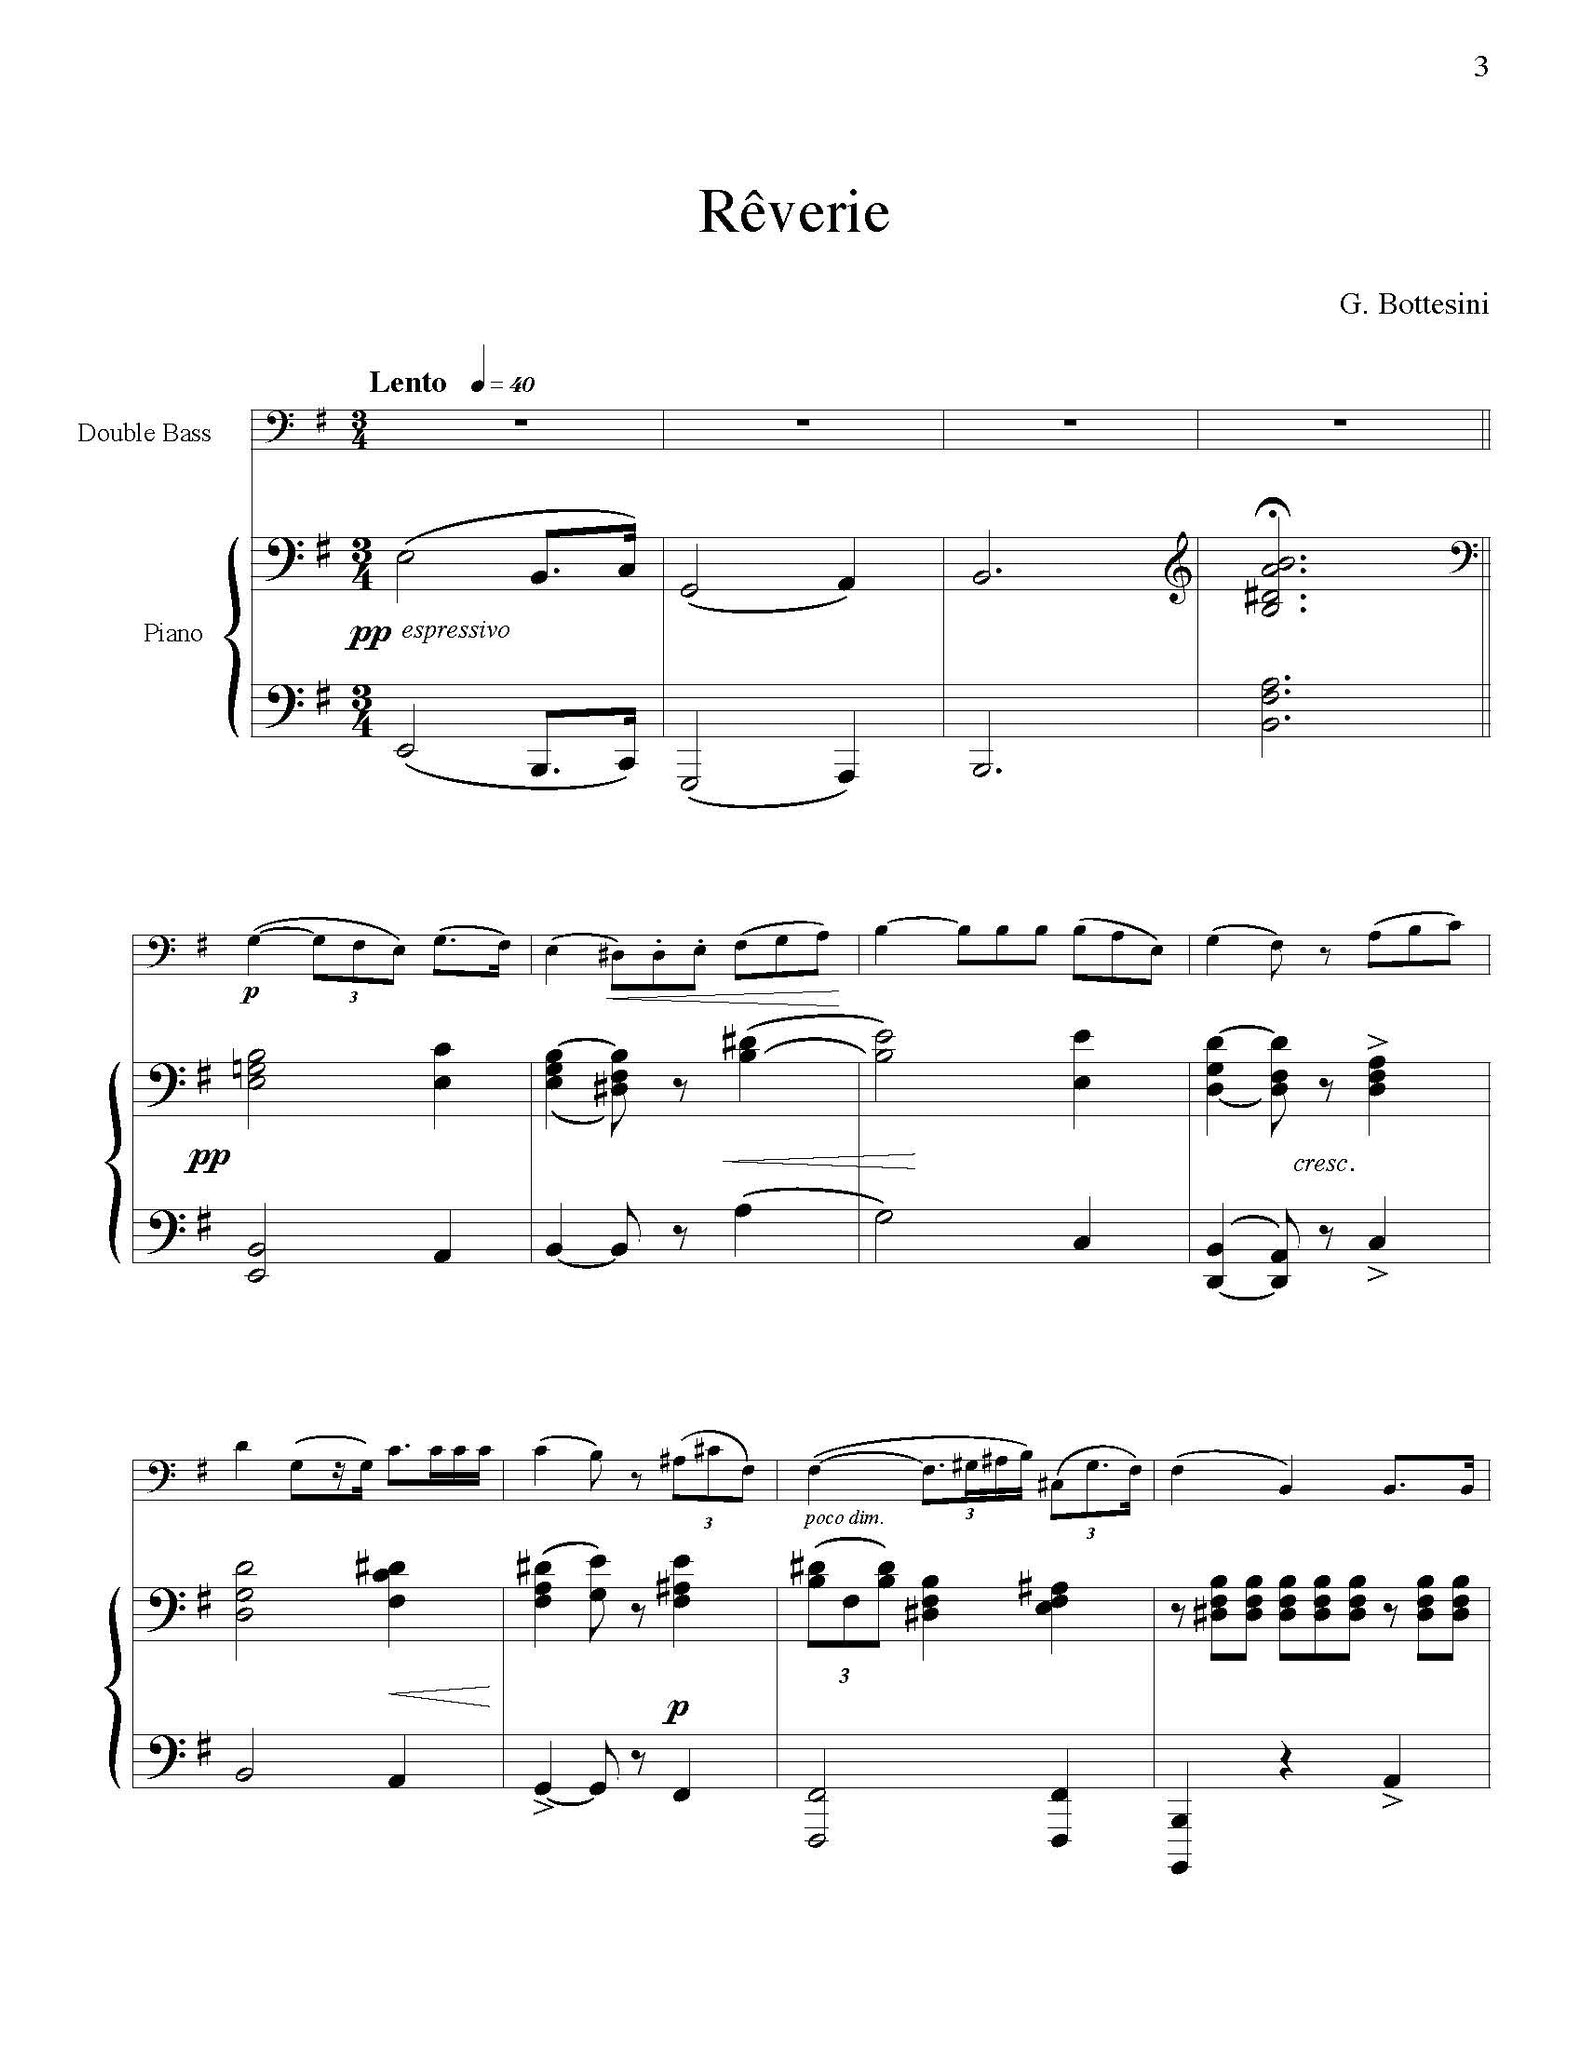 Bottesini Reverie e minor solo tuning page 1